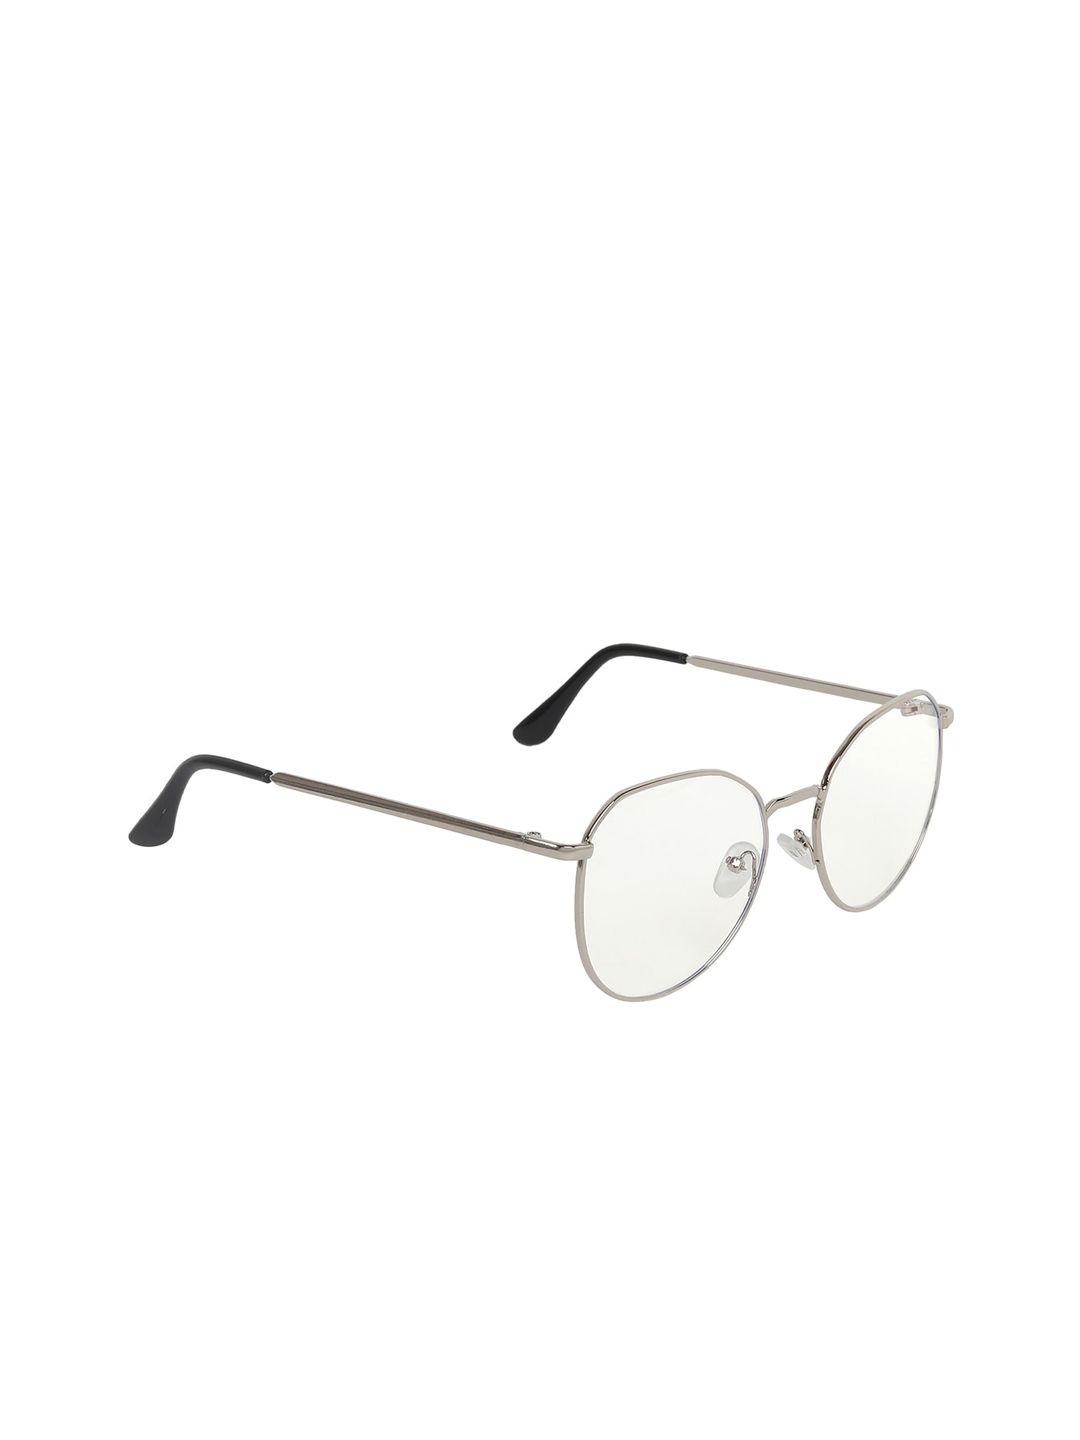 CRIBA Unisex Anti Reflective Blue Cut UV400 Sunglasses OREA_NICKLE_01 Price in India